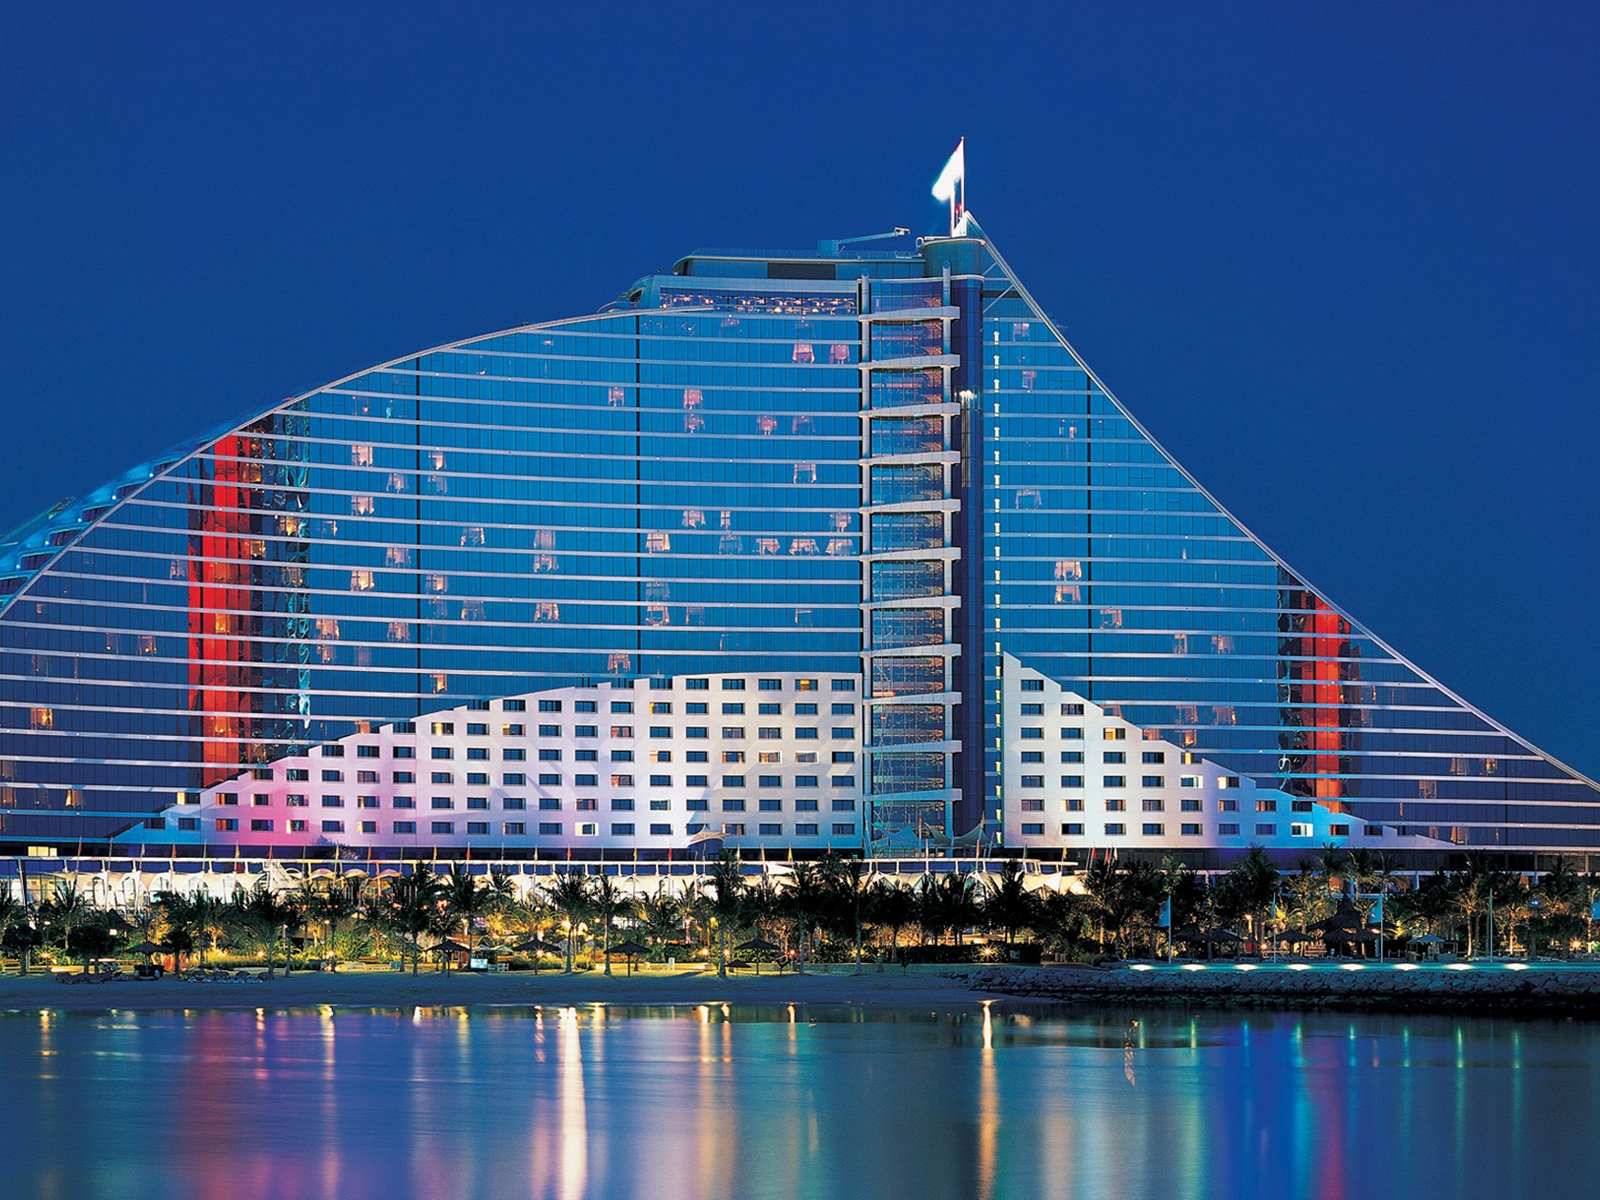 Jumeirah Beach Hotel Dubai for 1600 x 1200 resolution